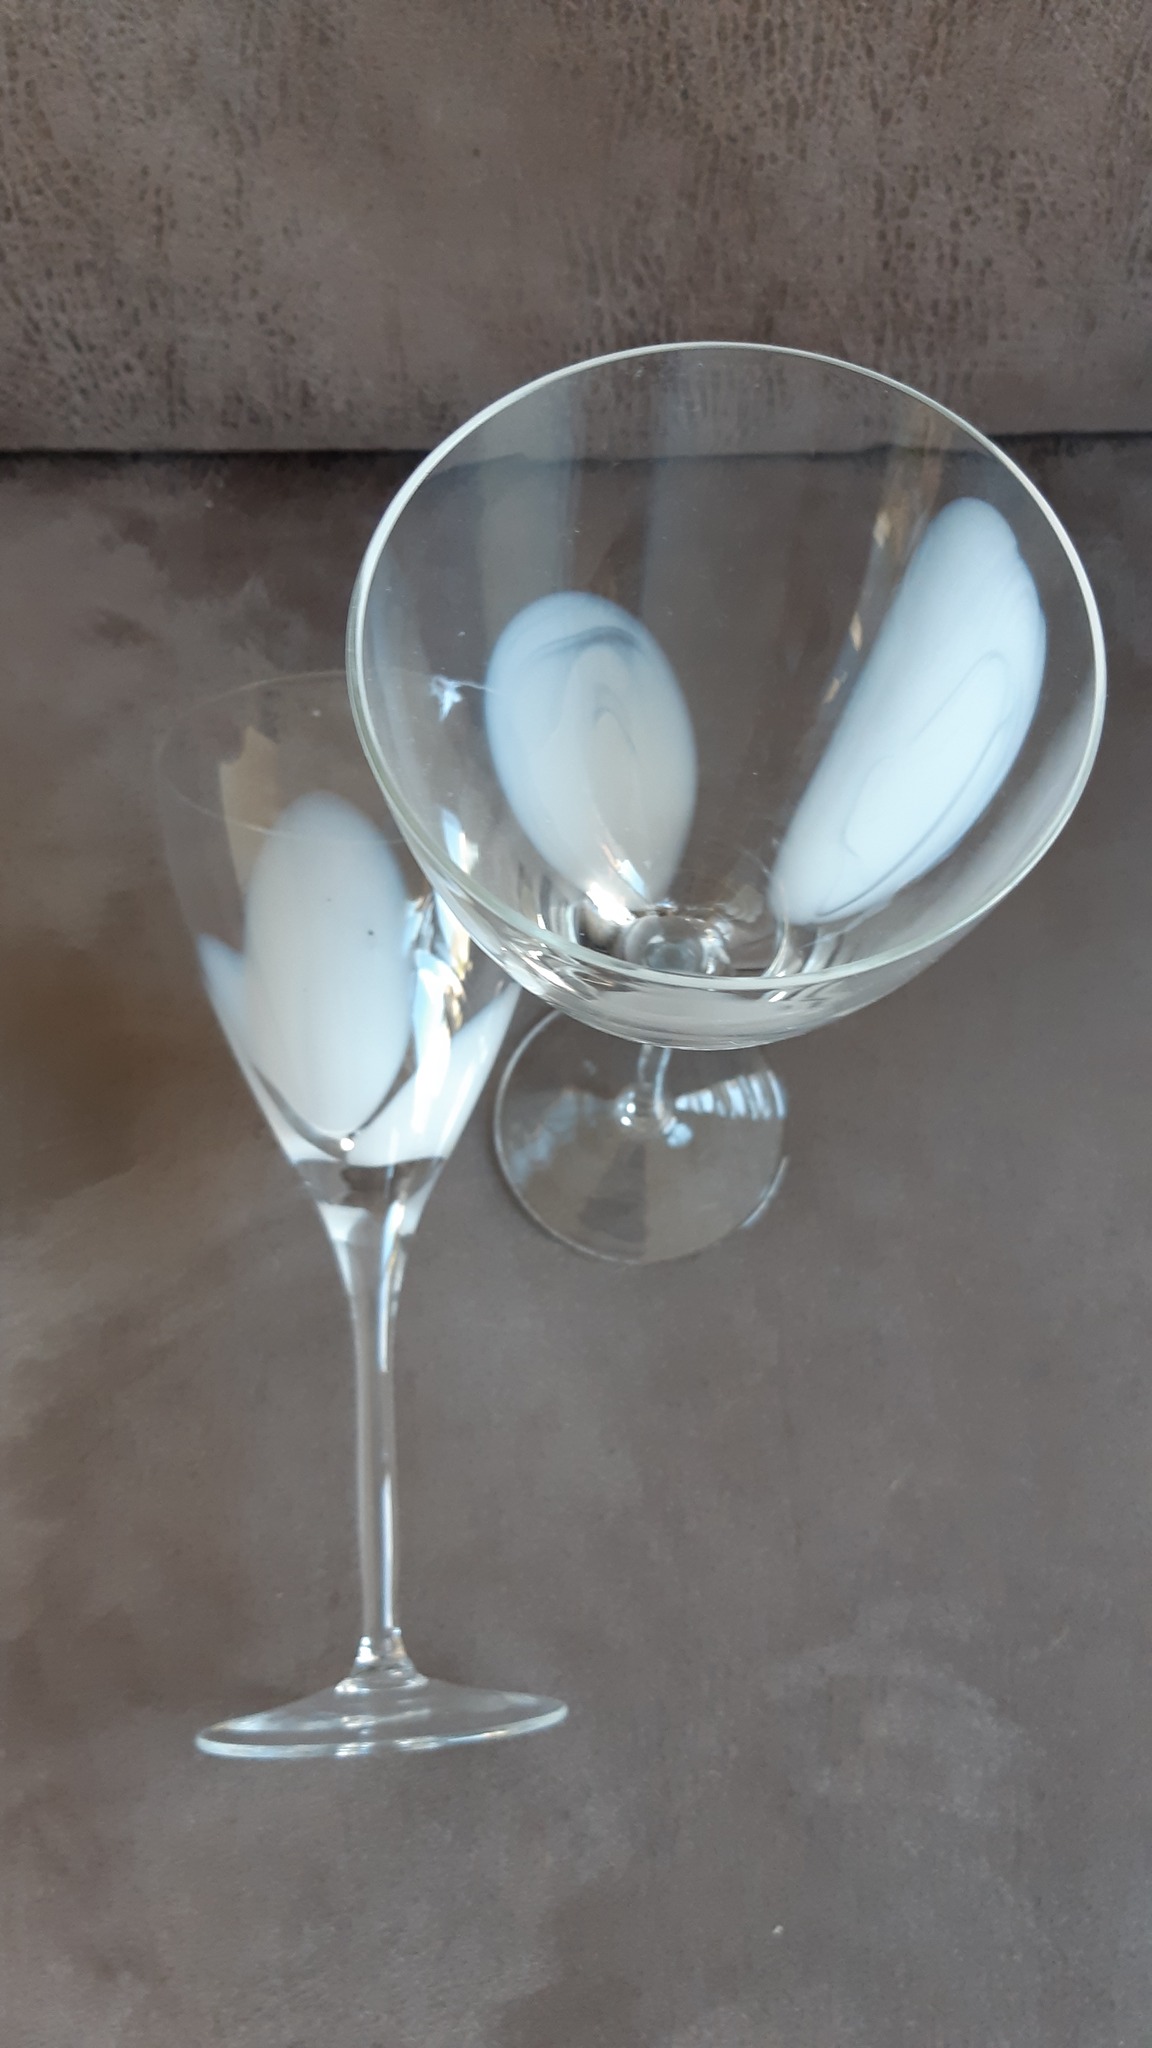 twee unieke identieke kristallen wijnglazen, met drie verenmotief